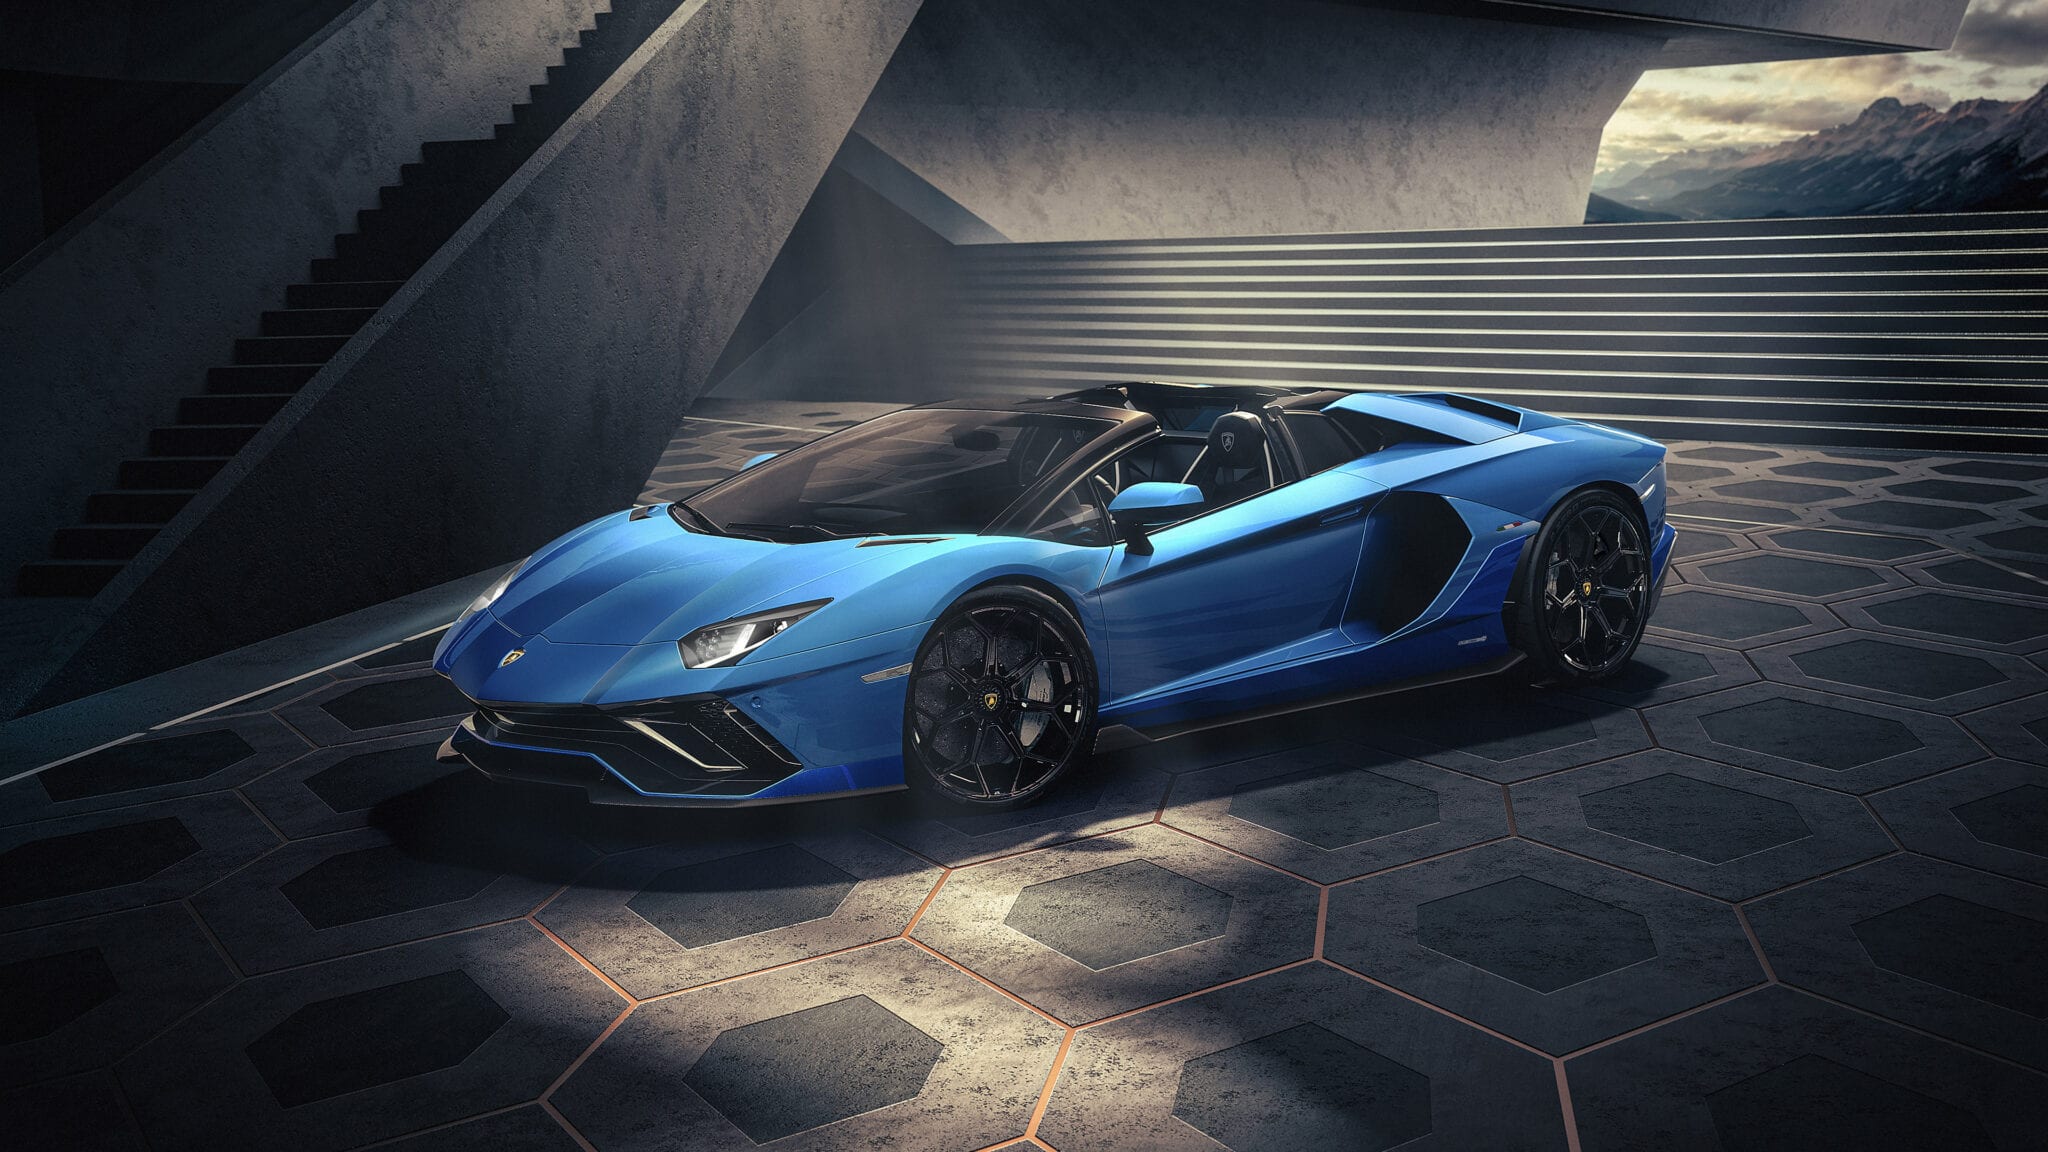 2022 Lamborghini Aventador Lp780 4 Ultimae Roadster Wallpapers | Images